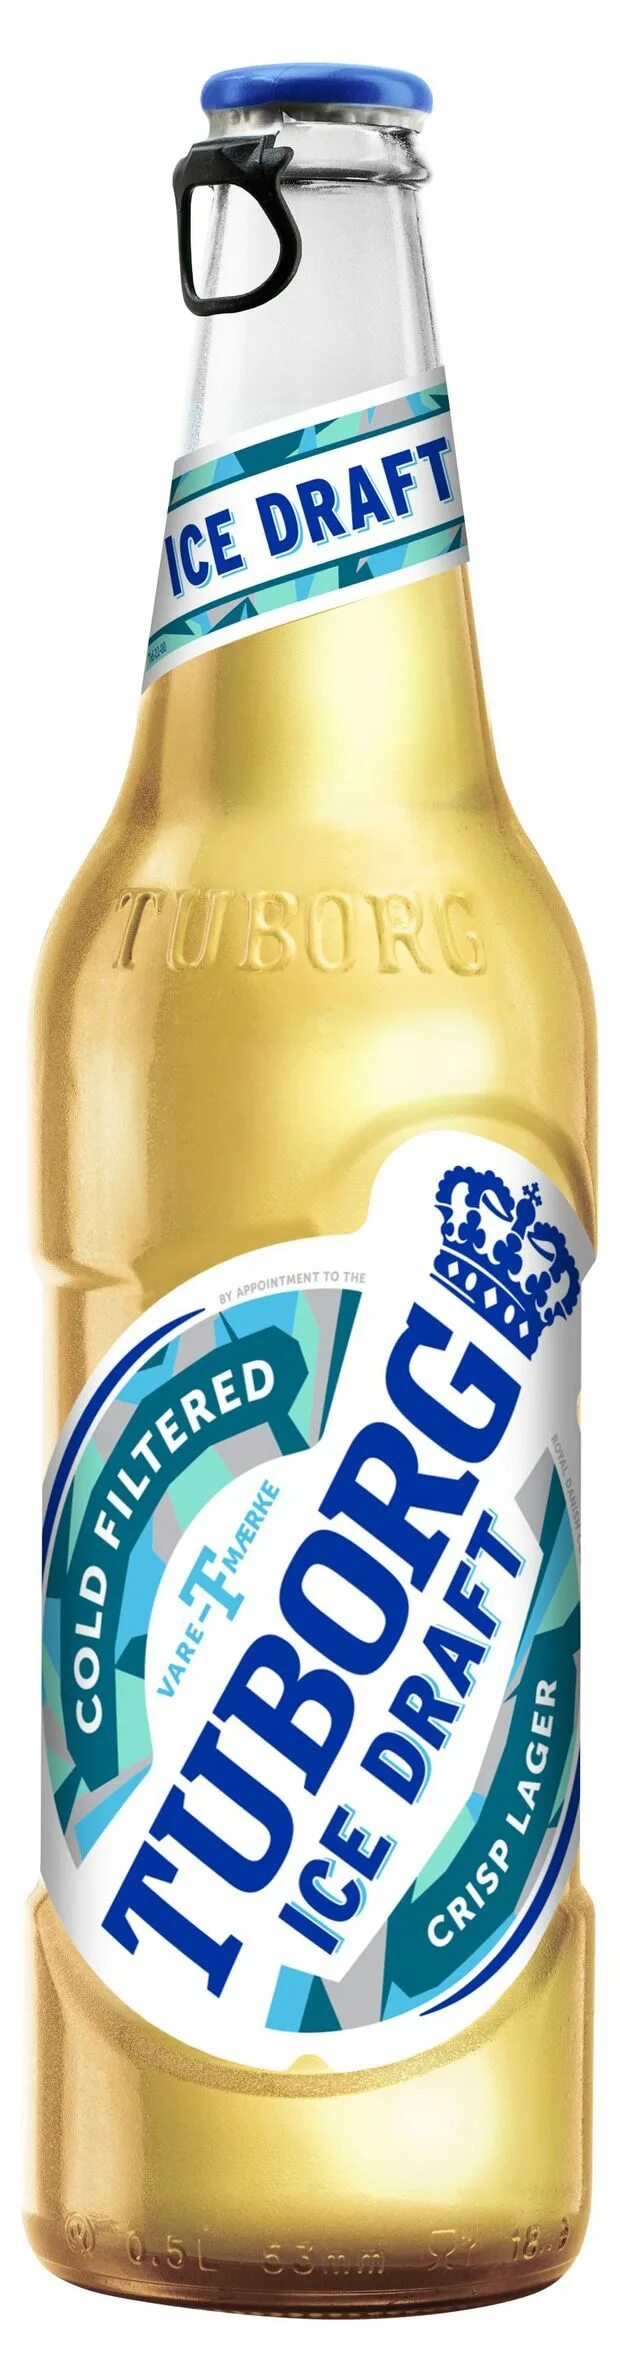 Пиво айс. Пиво туборг айс ДРАФТ. Пиво Tuborg Ice Draft 4.2. Туборг пиво светлое 0.48. Пиво туборг светлое.